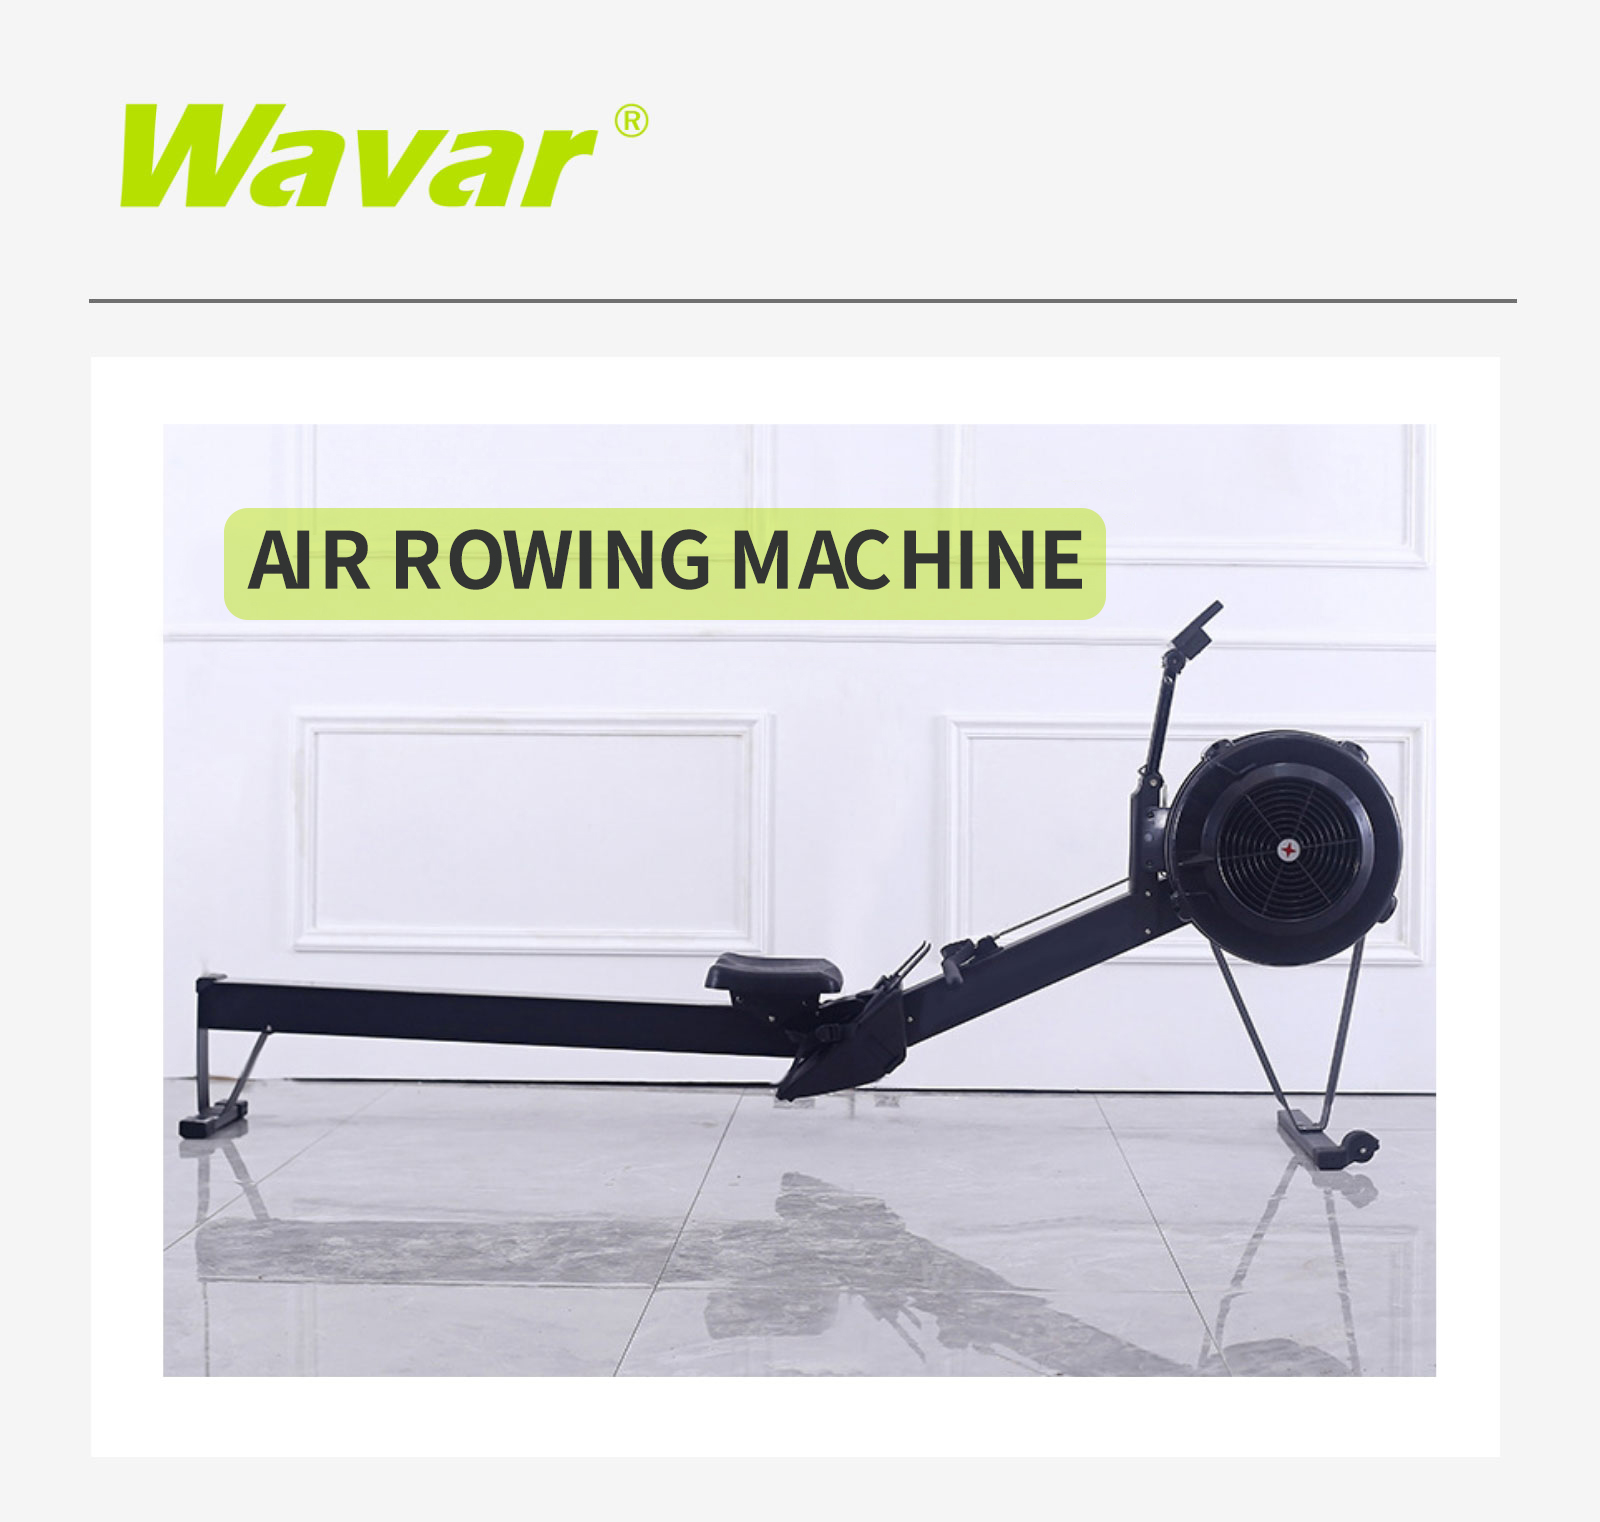 Air Rowing Machine